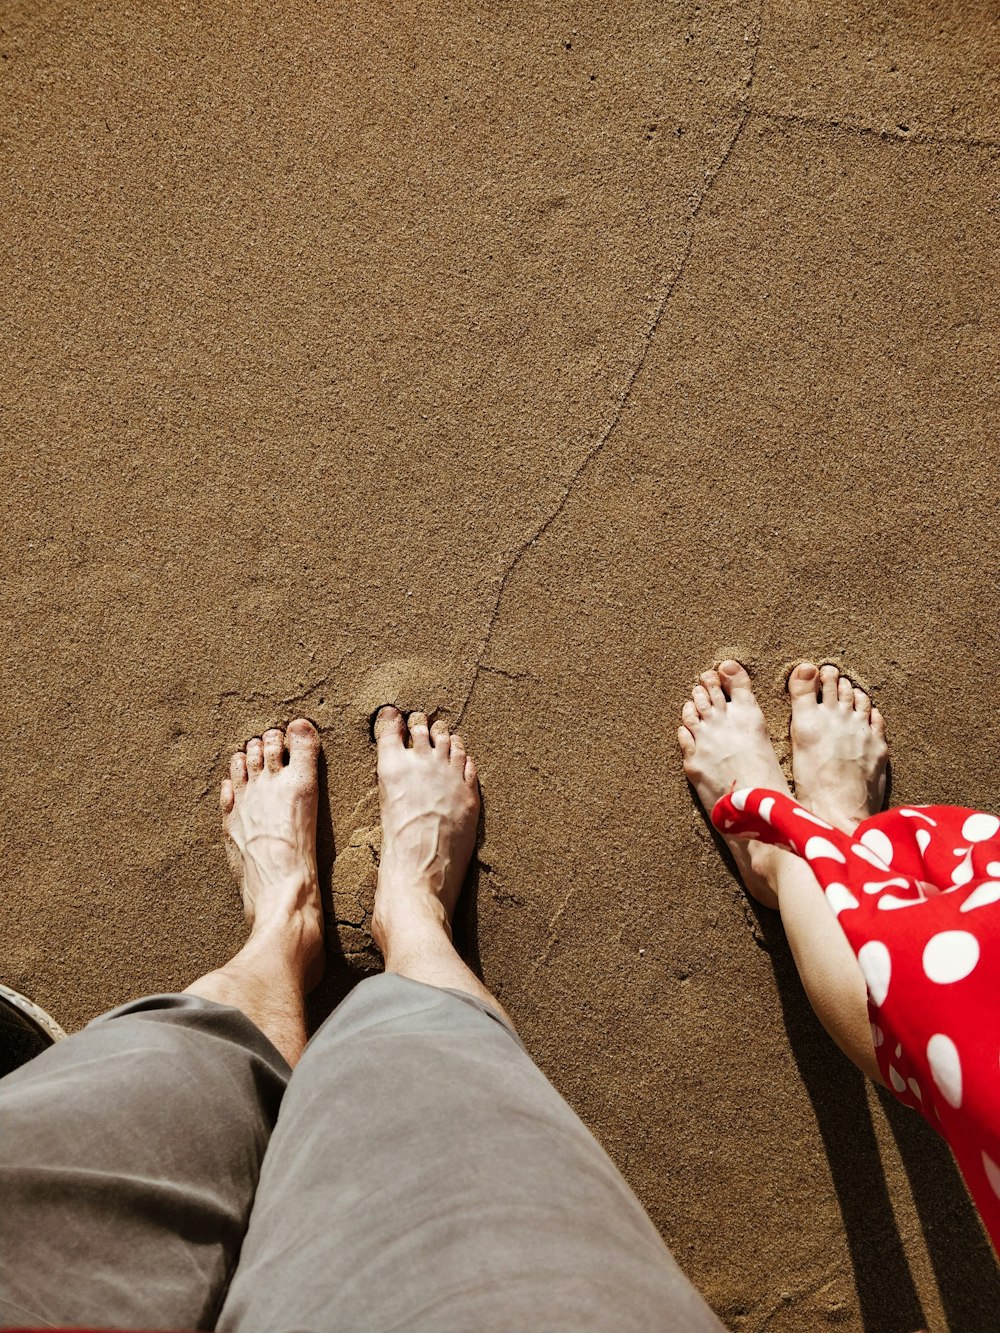 homem e mulher em pé na areia durante o dia